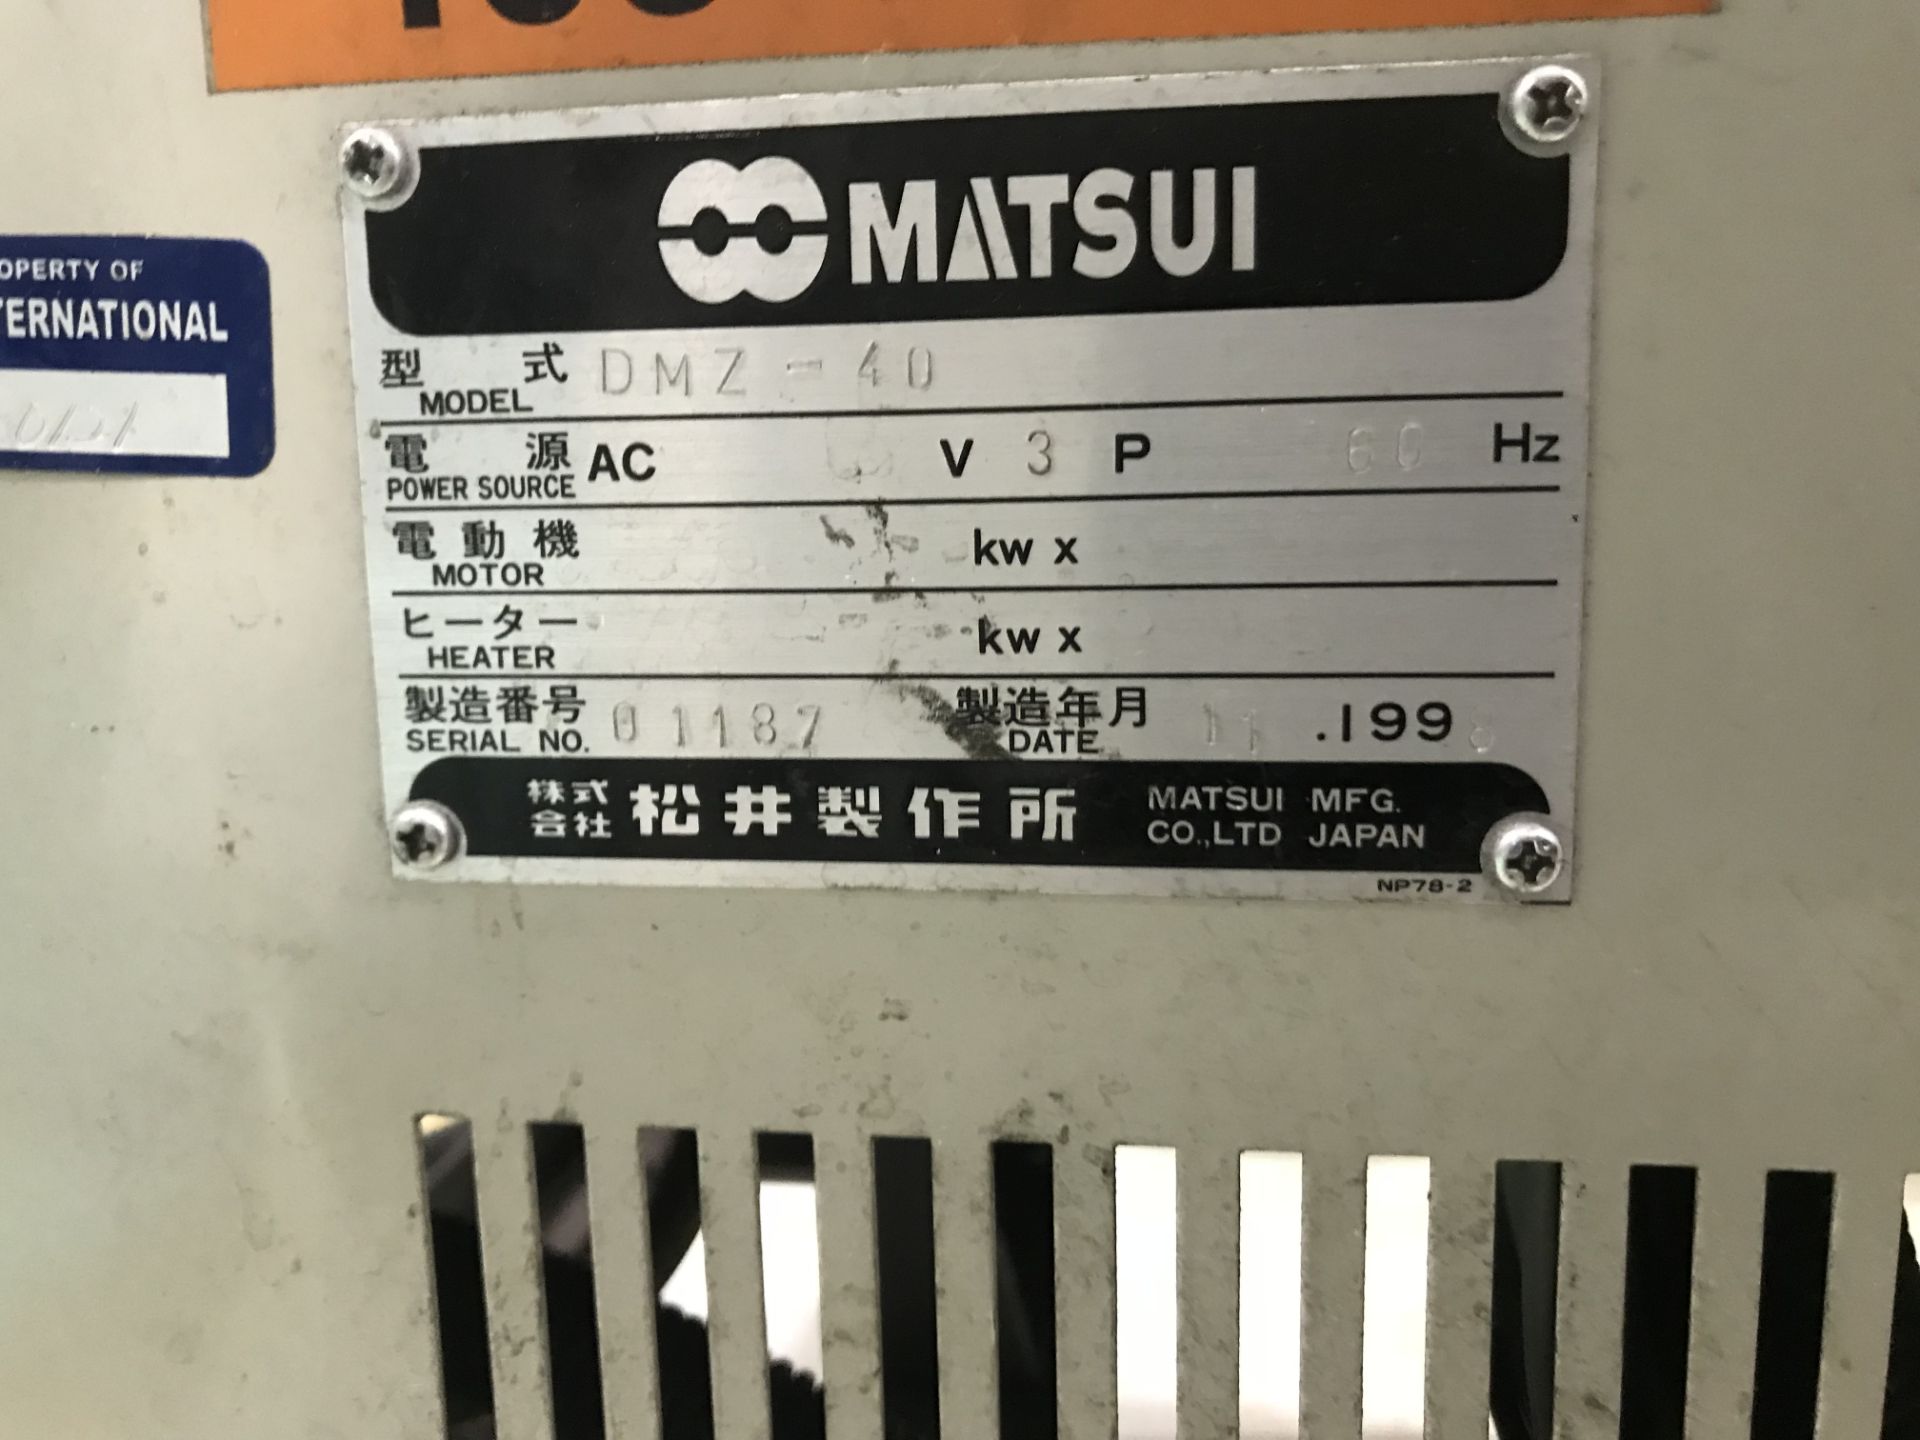 Matsui DMZ-40 Dehumidifying Dryer, s/n 01187 - Image 3 of 3